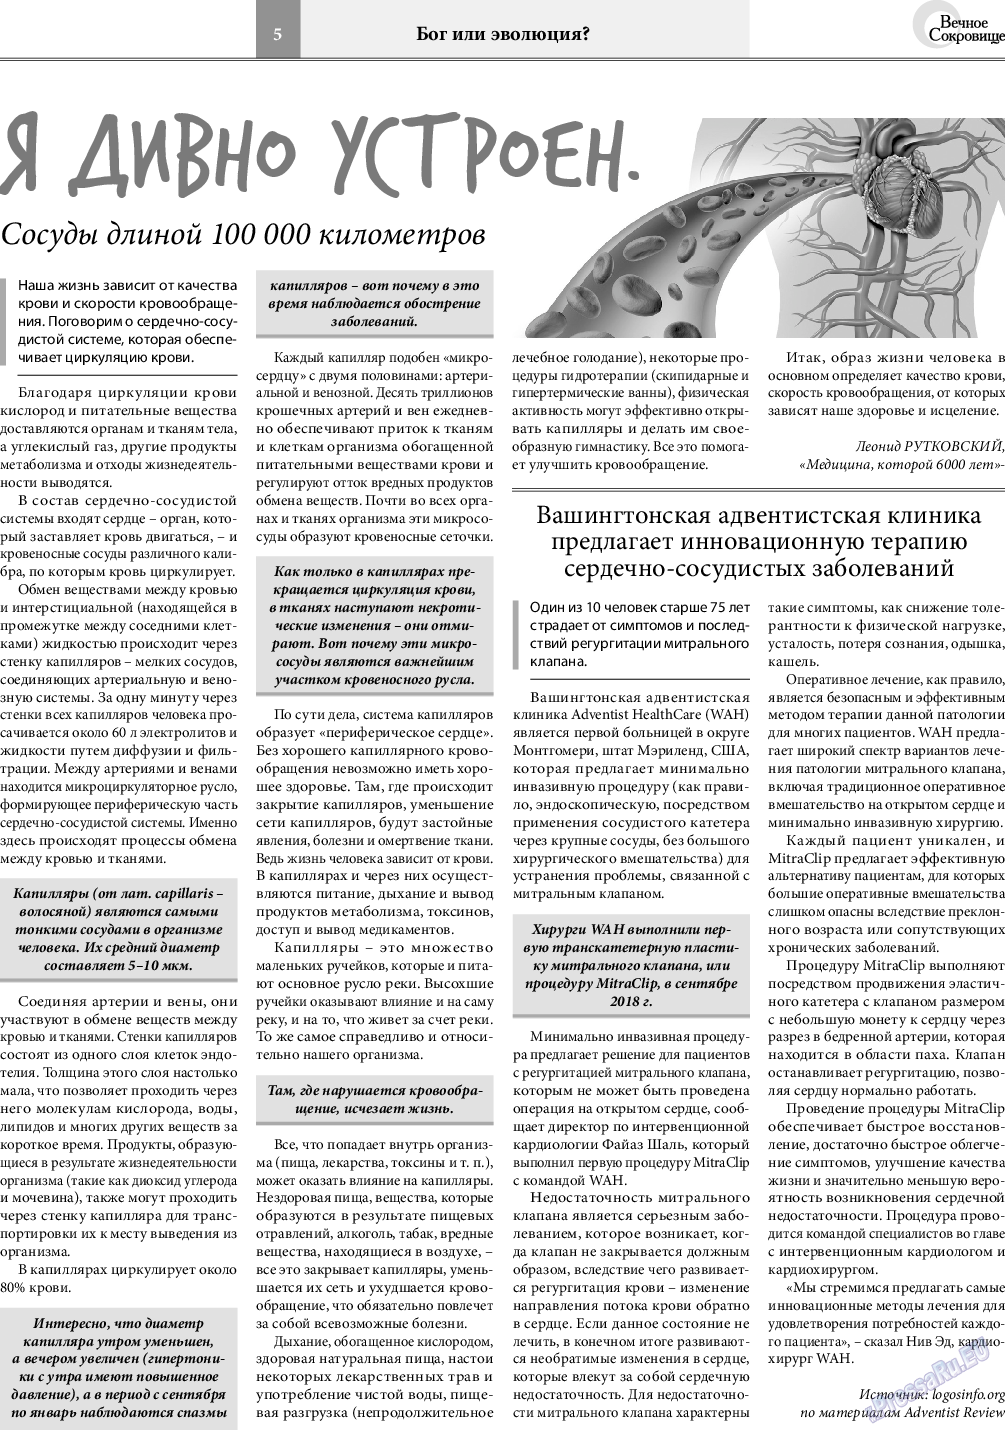 Вечное сокровище, газета. 2018 №6 стр.5